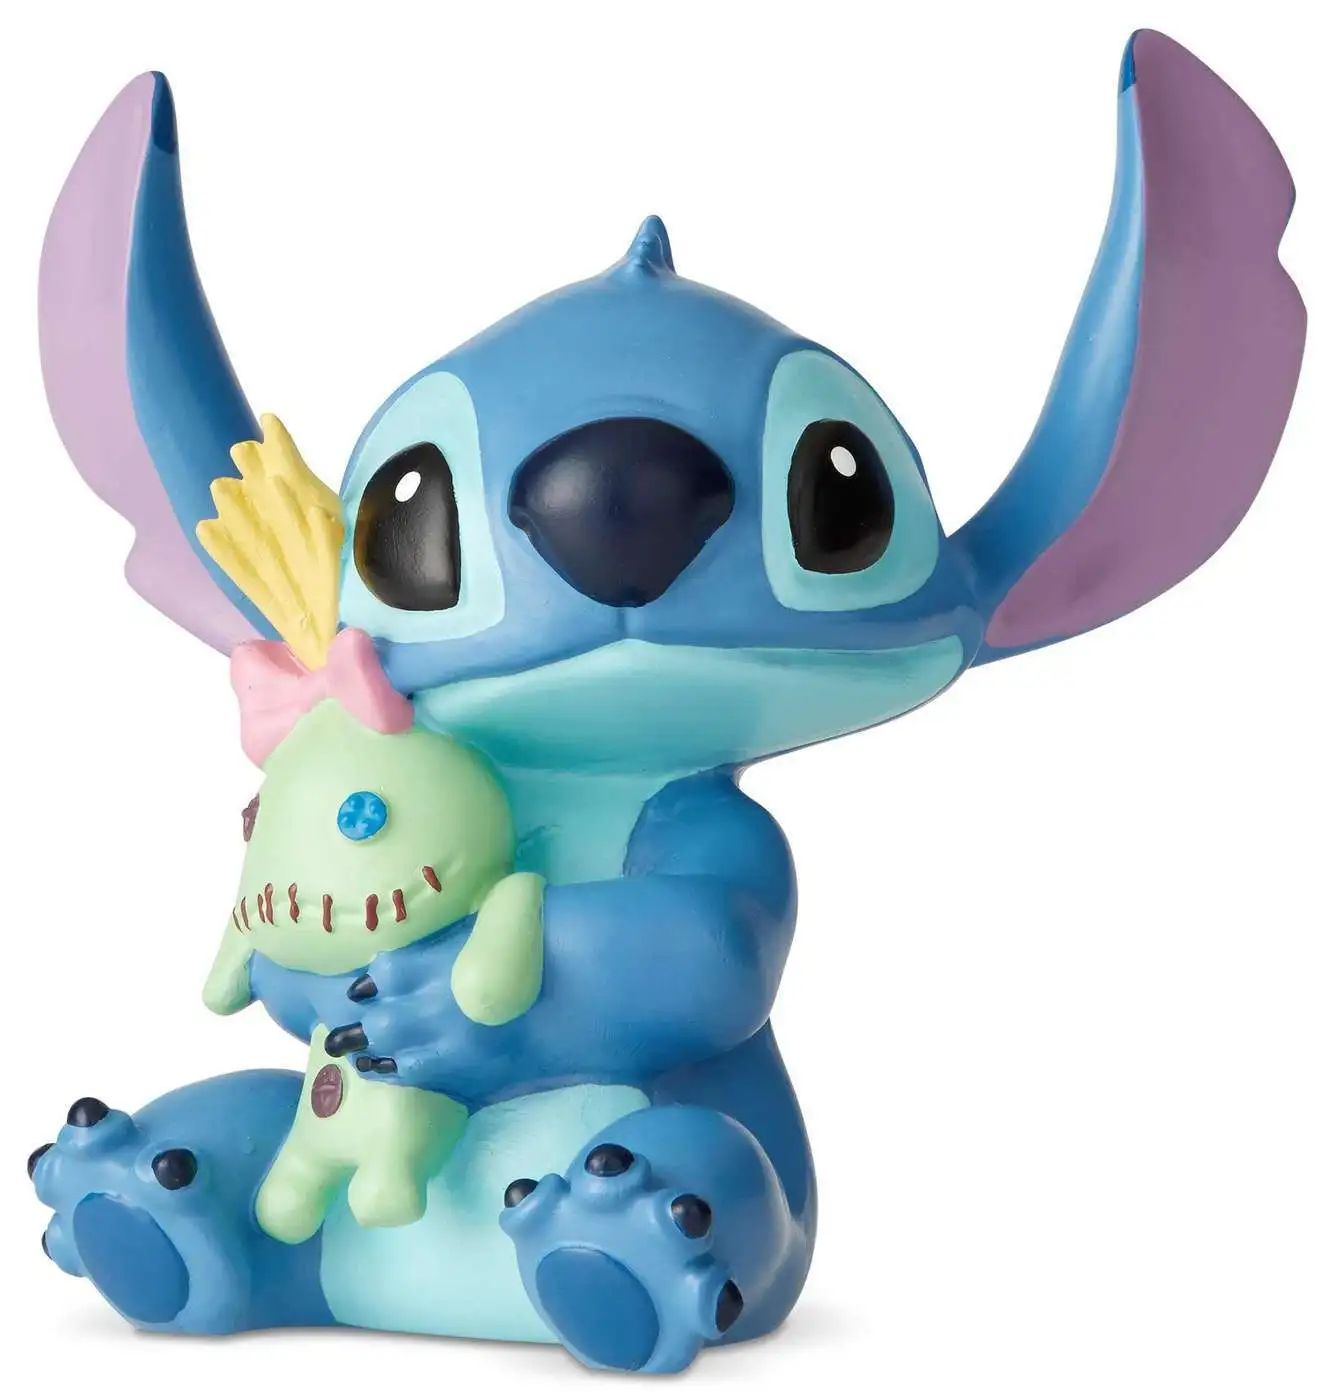 Disney Lilo Stitch Angel Exclusive 14 Plush - ToyWiz